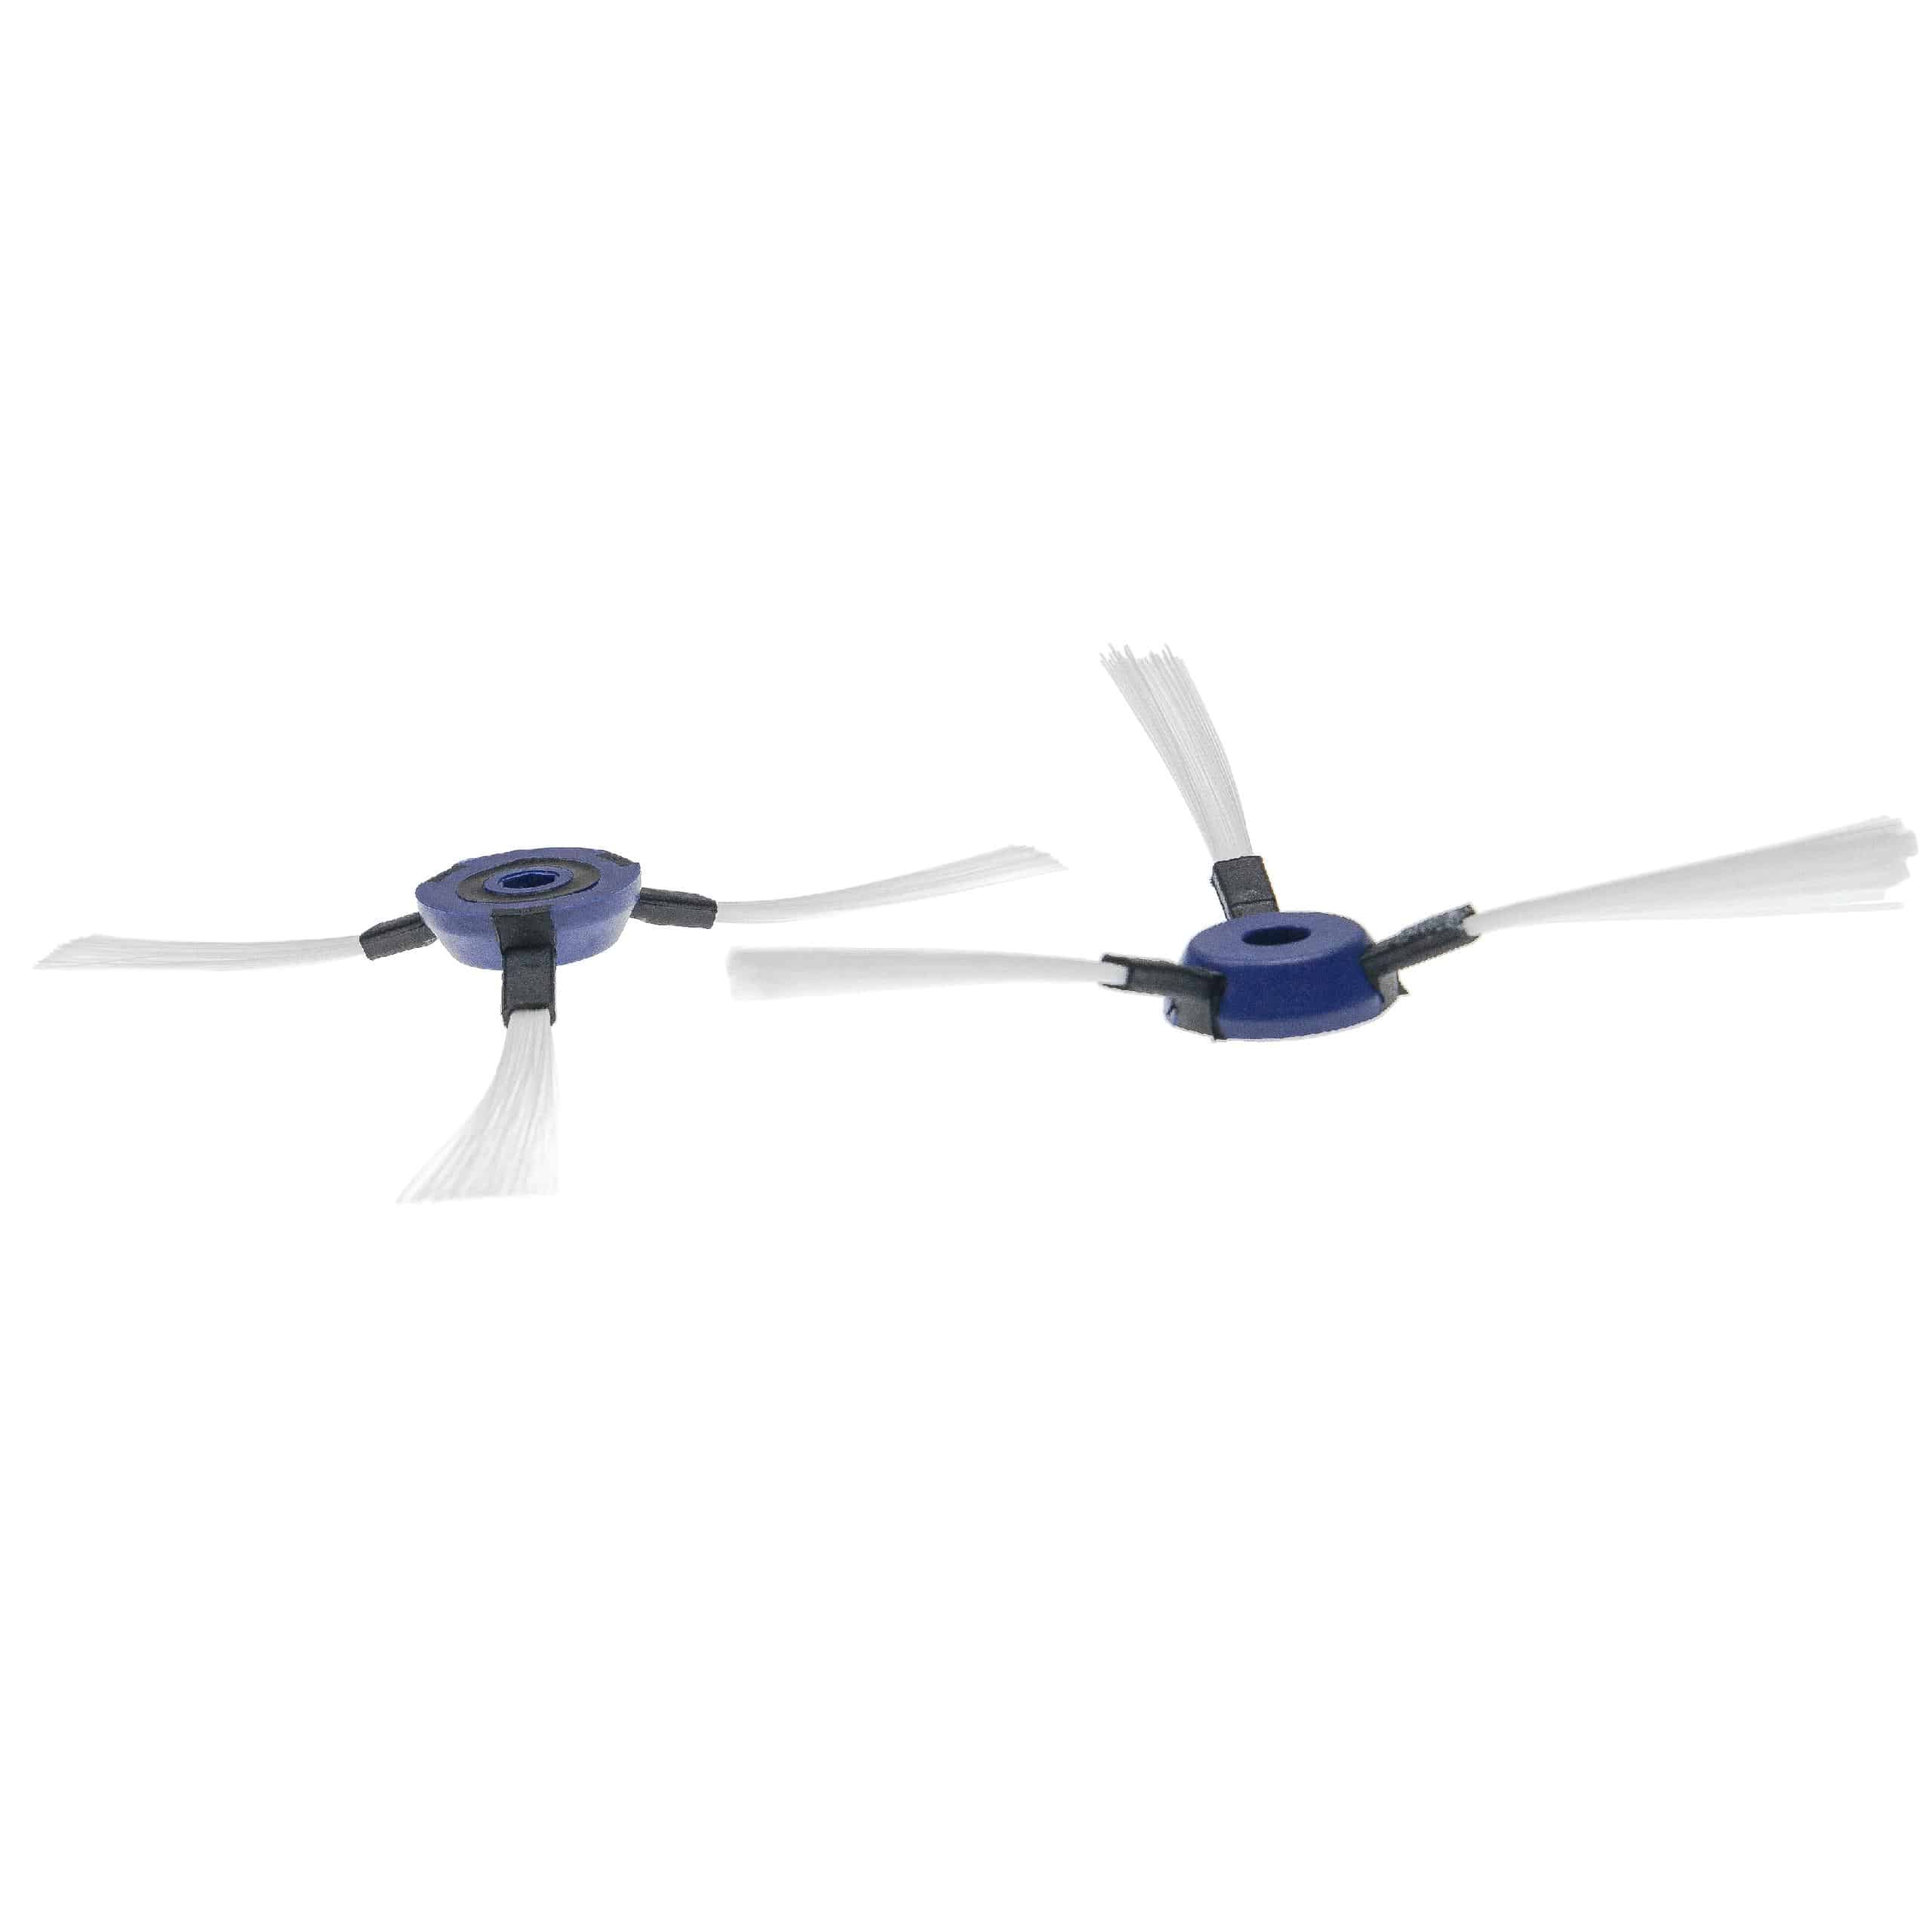 2x Cepillo lateral 3 brazos para robot aspirador Rowenta Smart Force - Set de cepillos negro / blanco / azul